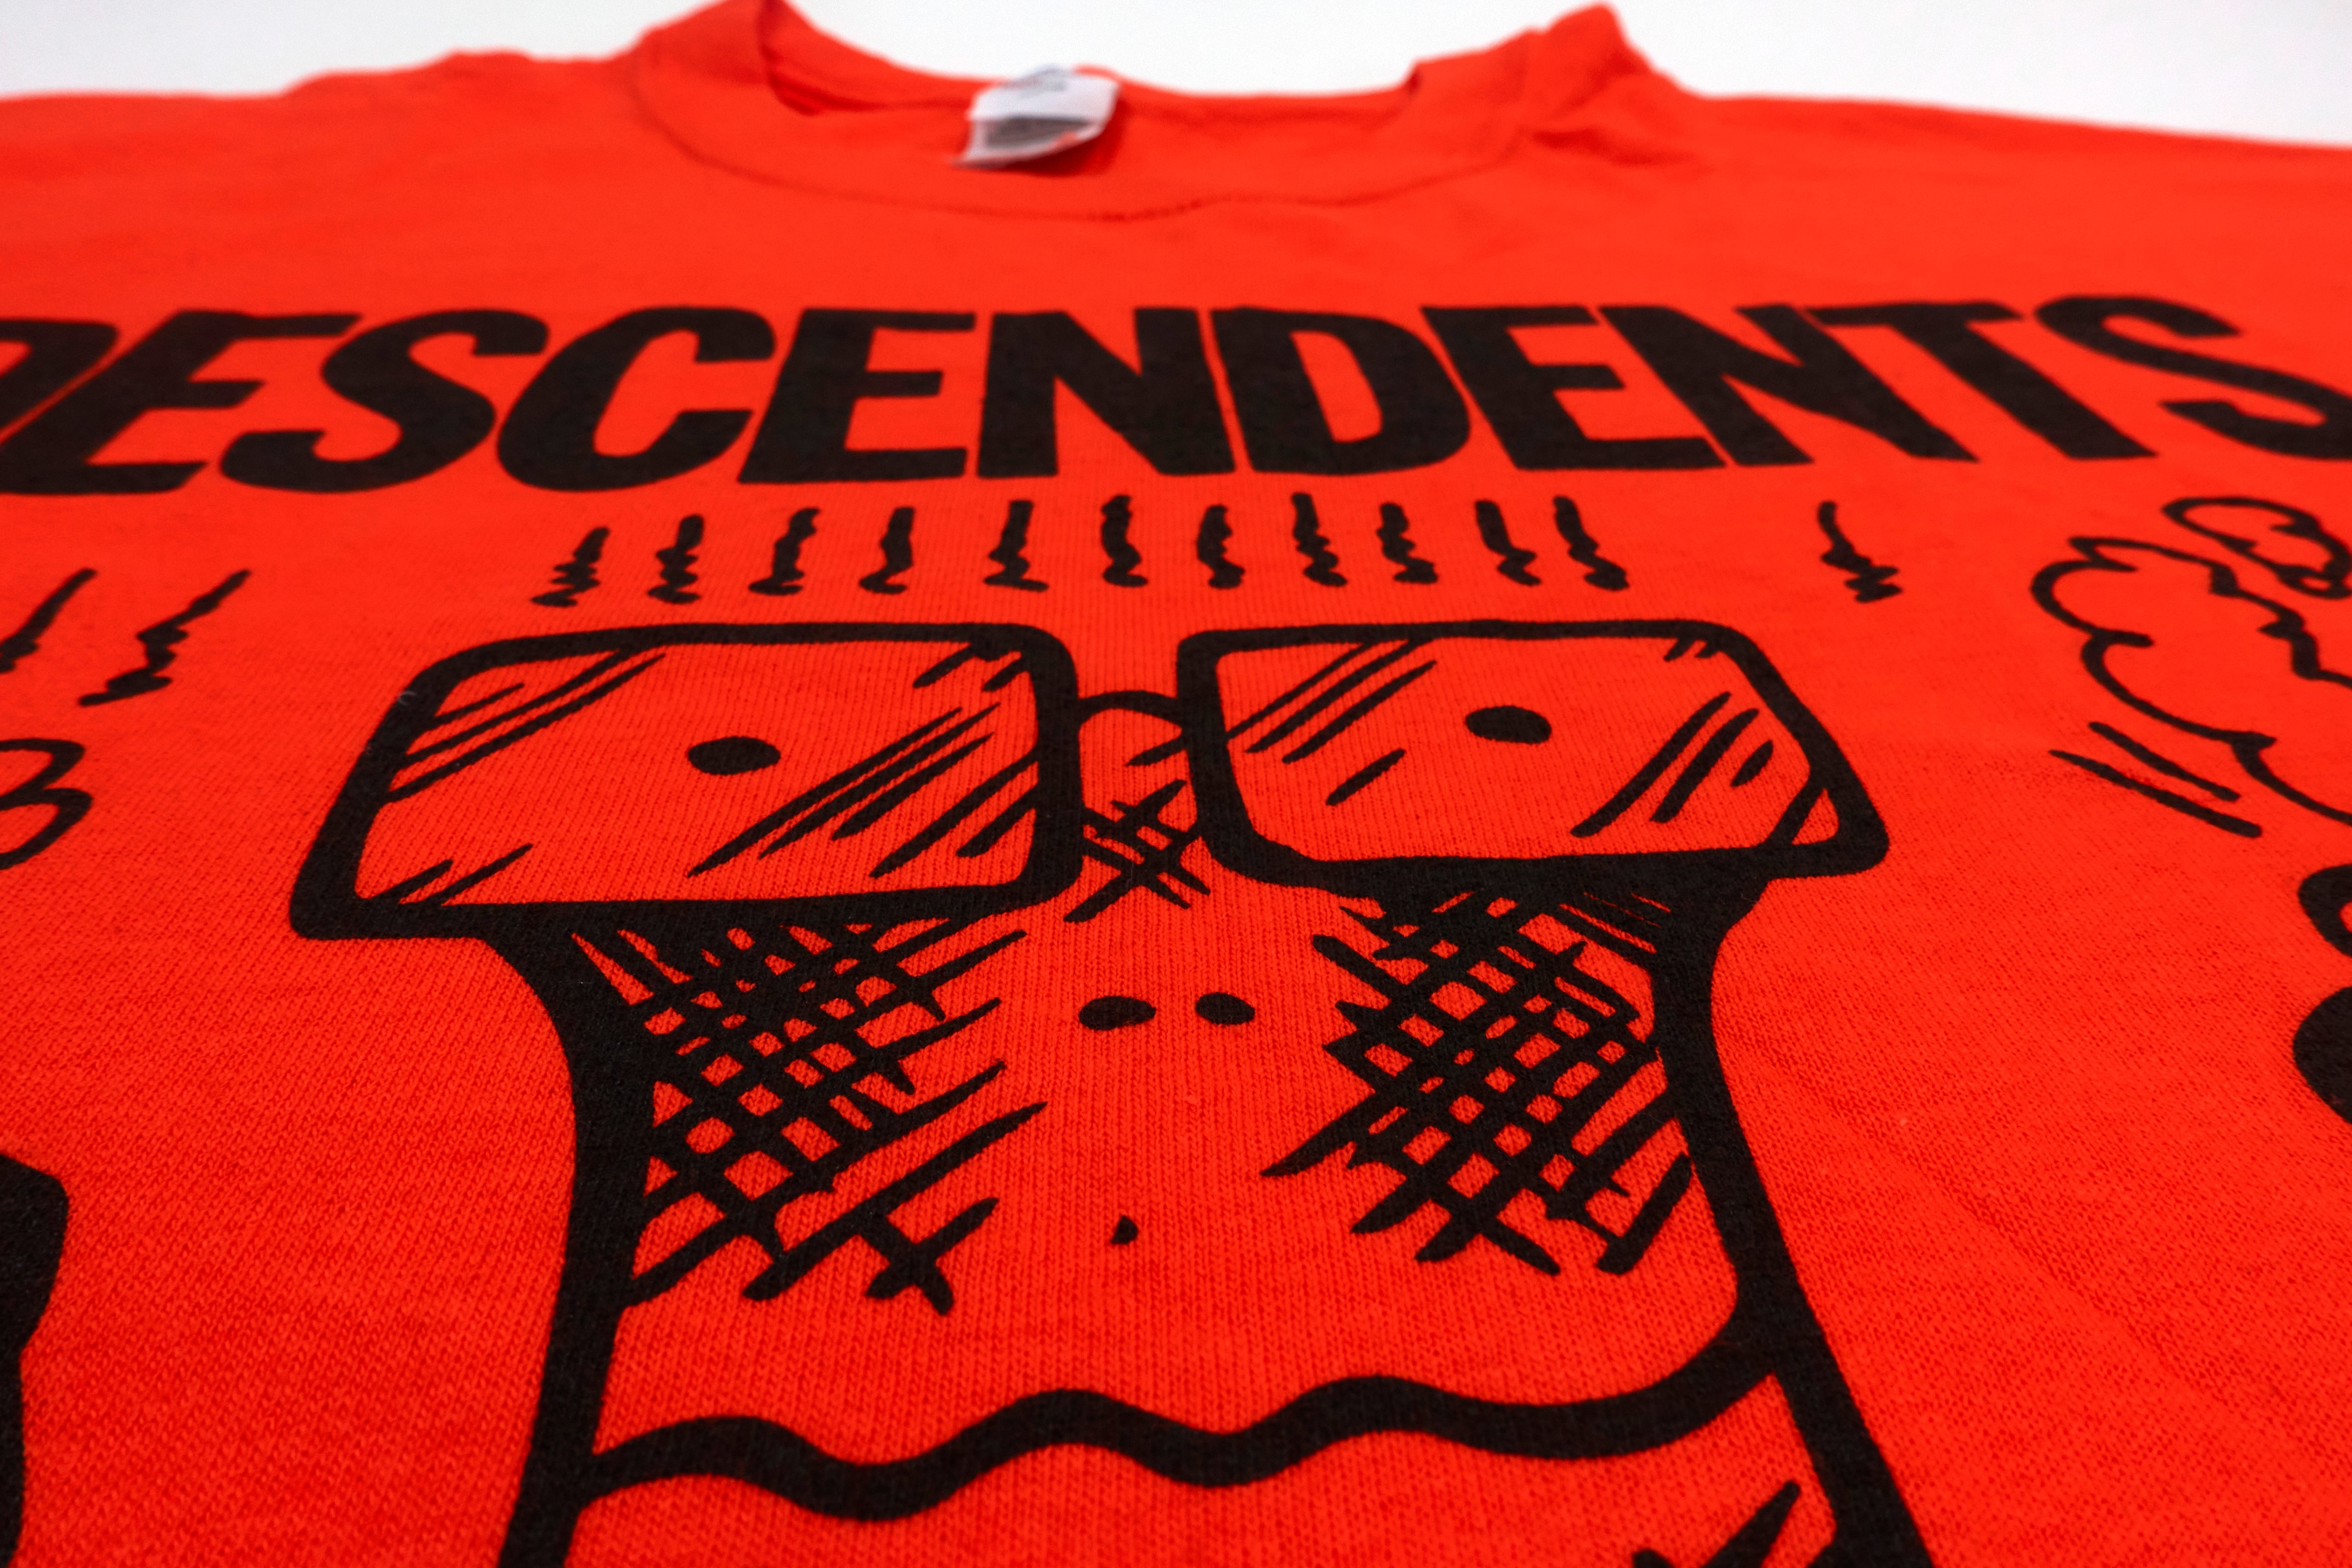 Descendents - SpazzHazard 1/C 2016 Tour Shirt Size XL